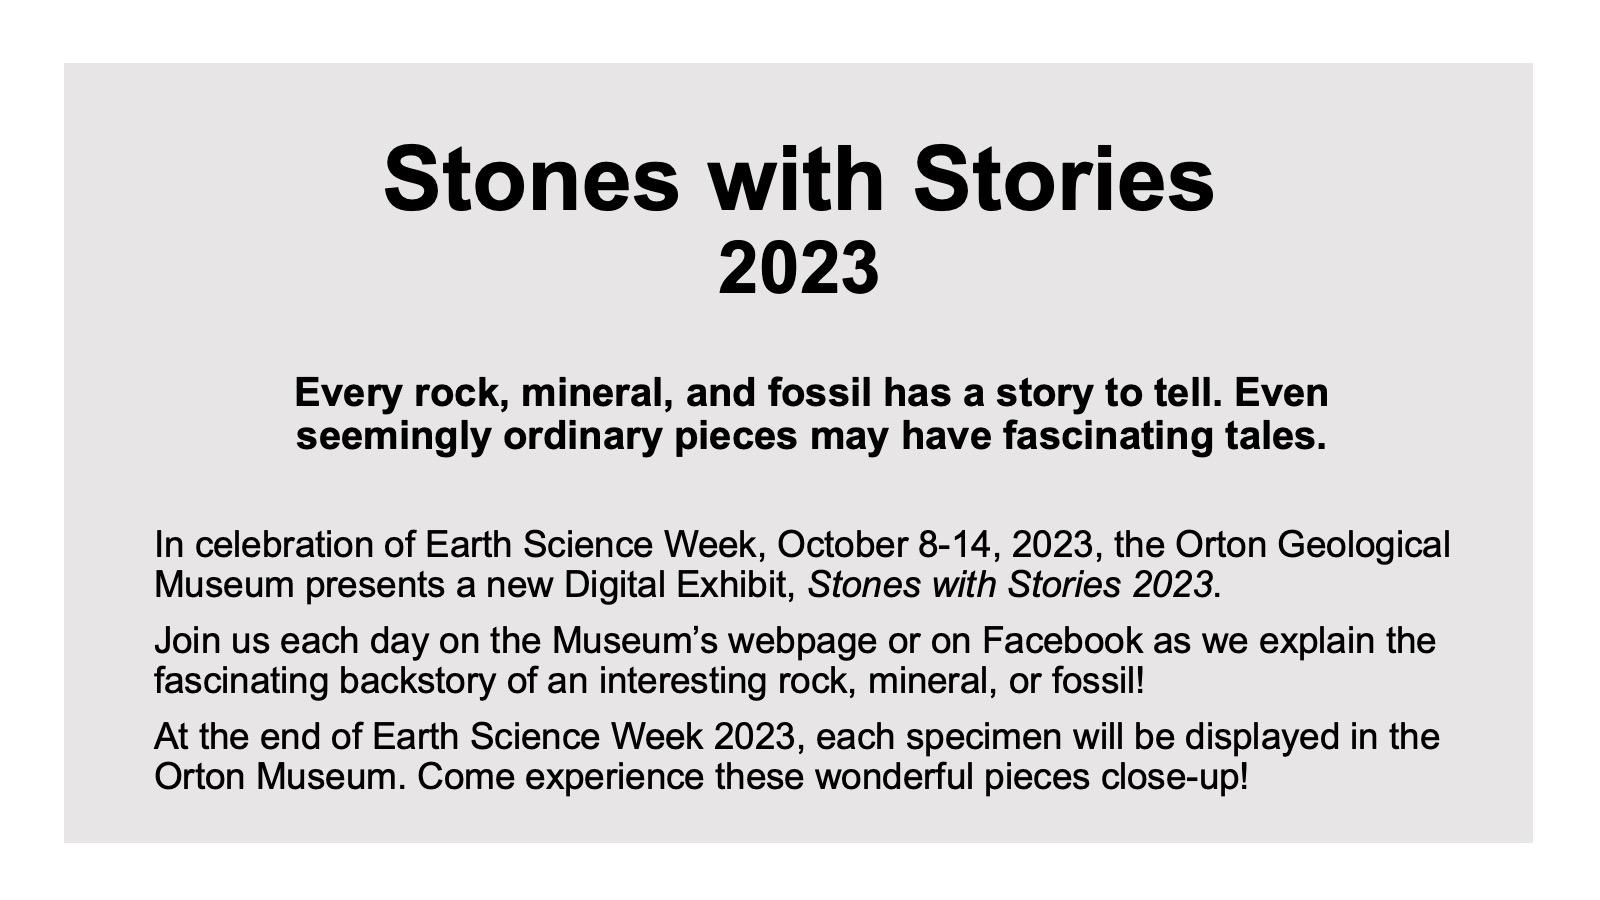 Stones with Stories 2023 description